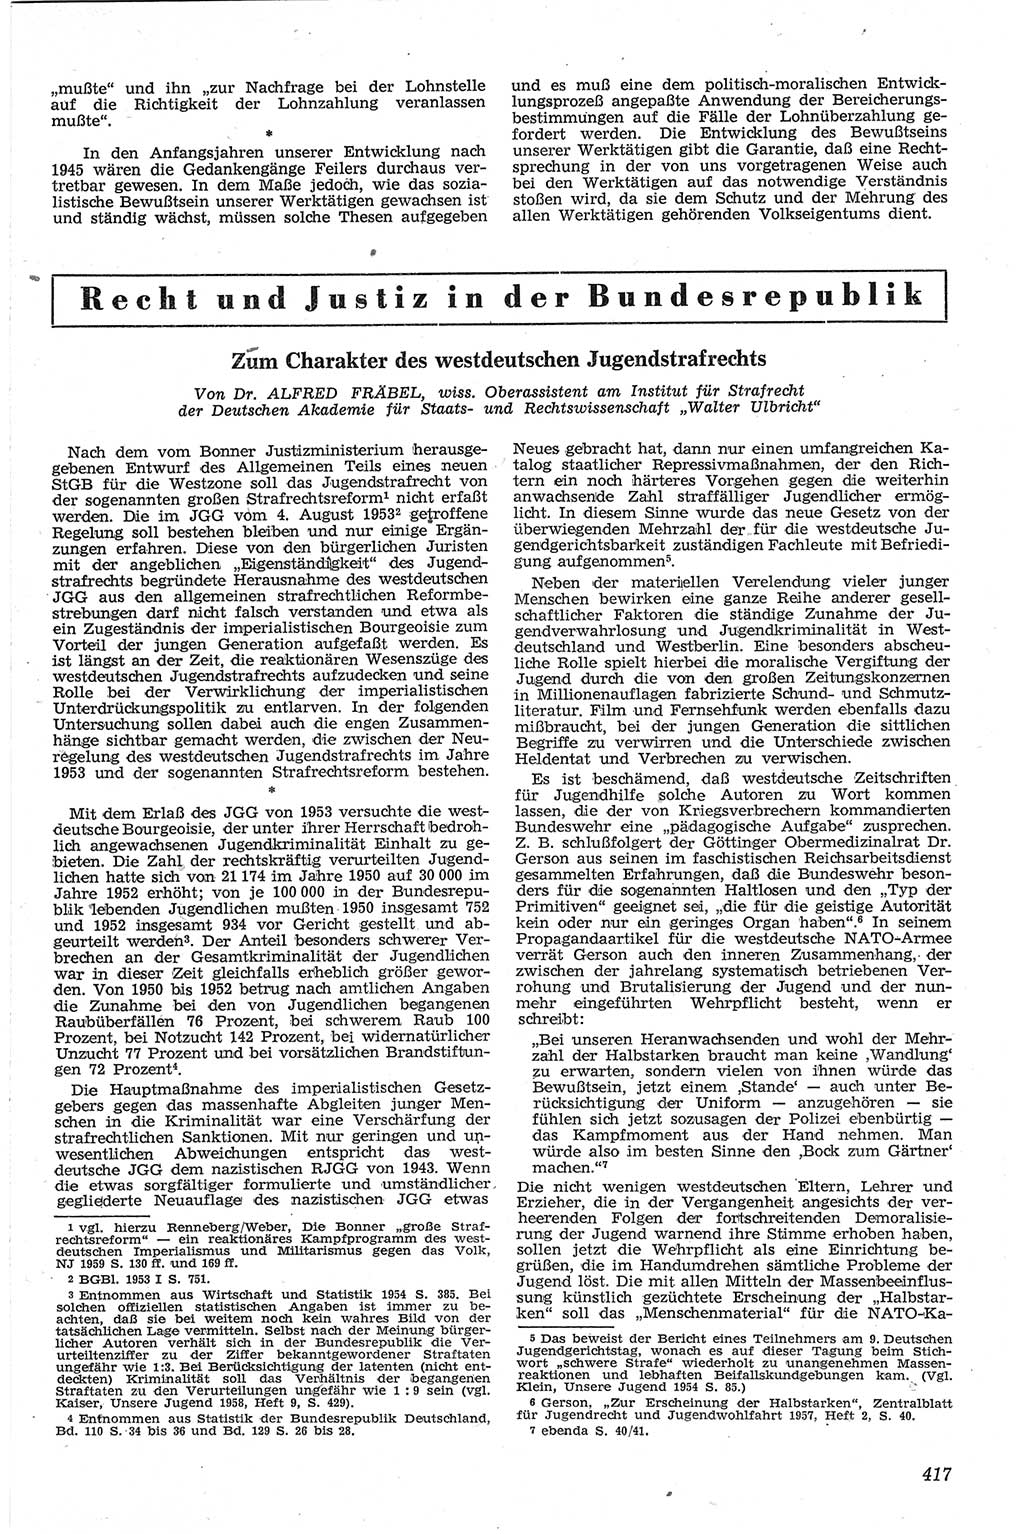 Neue Justiz (NJ), Zeitschrift für Recht und Rechtswissenschaft [Deutsche Demokratische Republik (DDR)], 13. Jahrgang 1959, Seite 417 (NJ DDR 1959, S. 417)